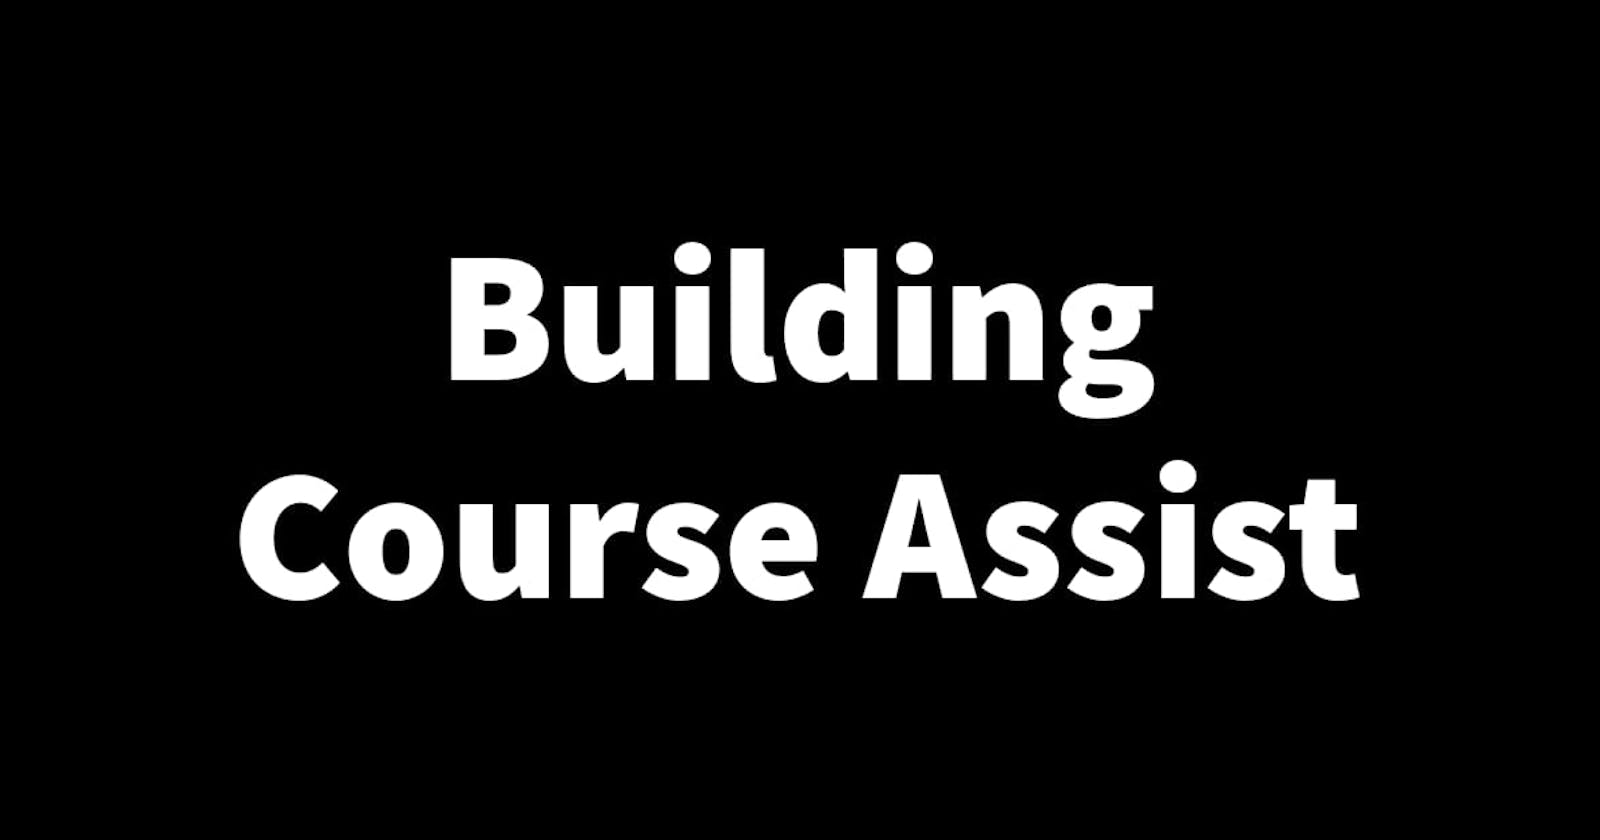 Building Course Assist Part 21: Building the Course Assist APKs for testing